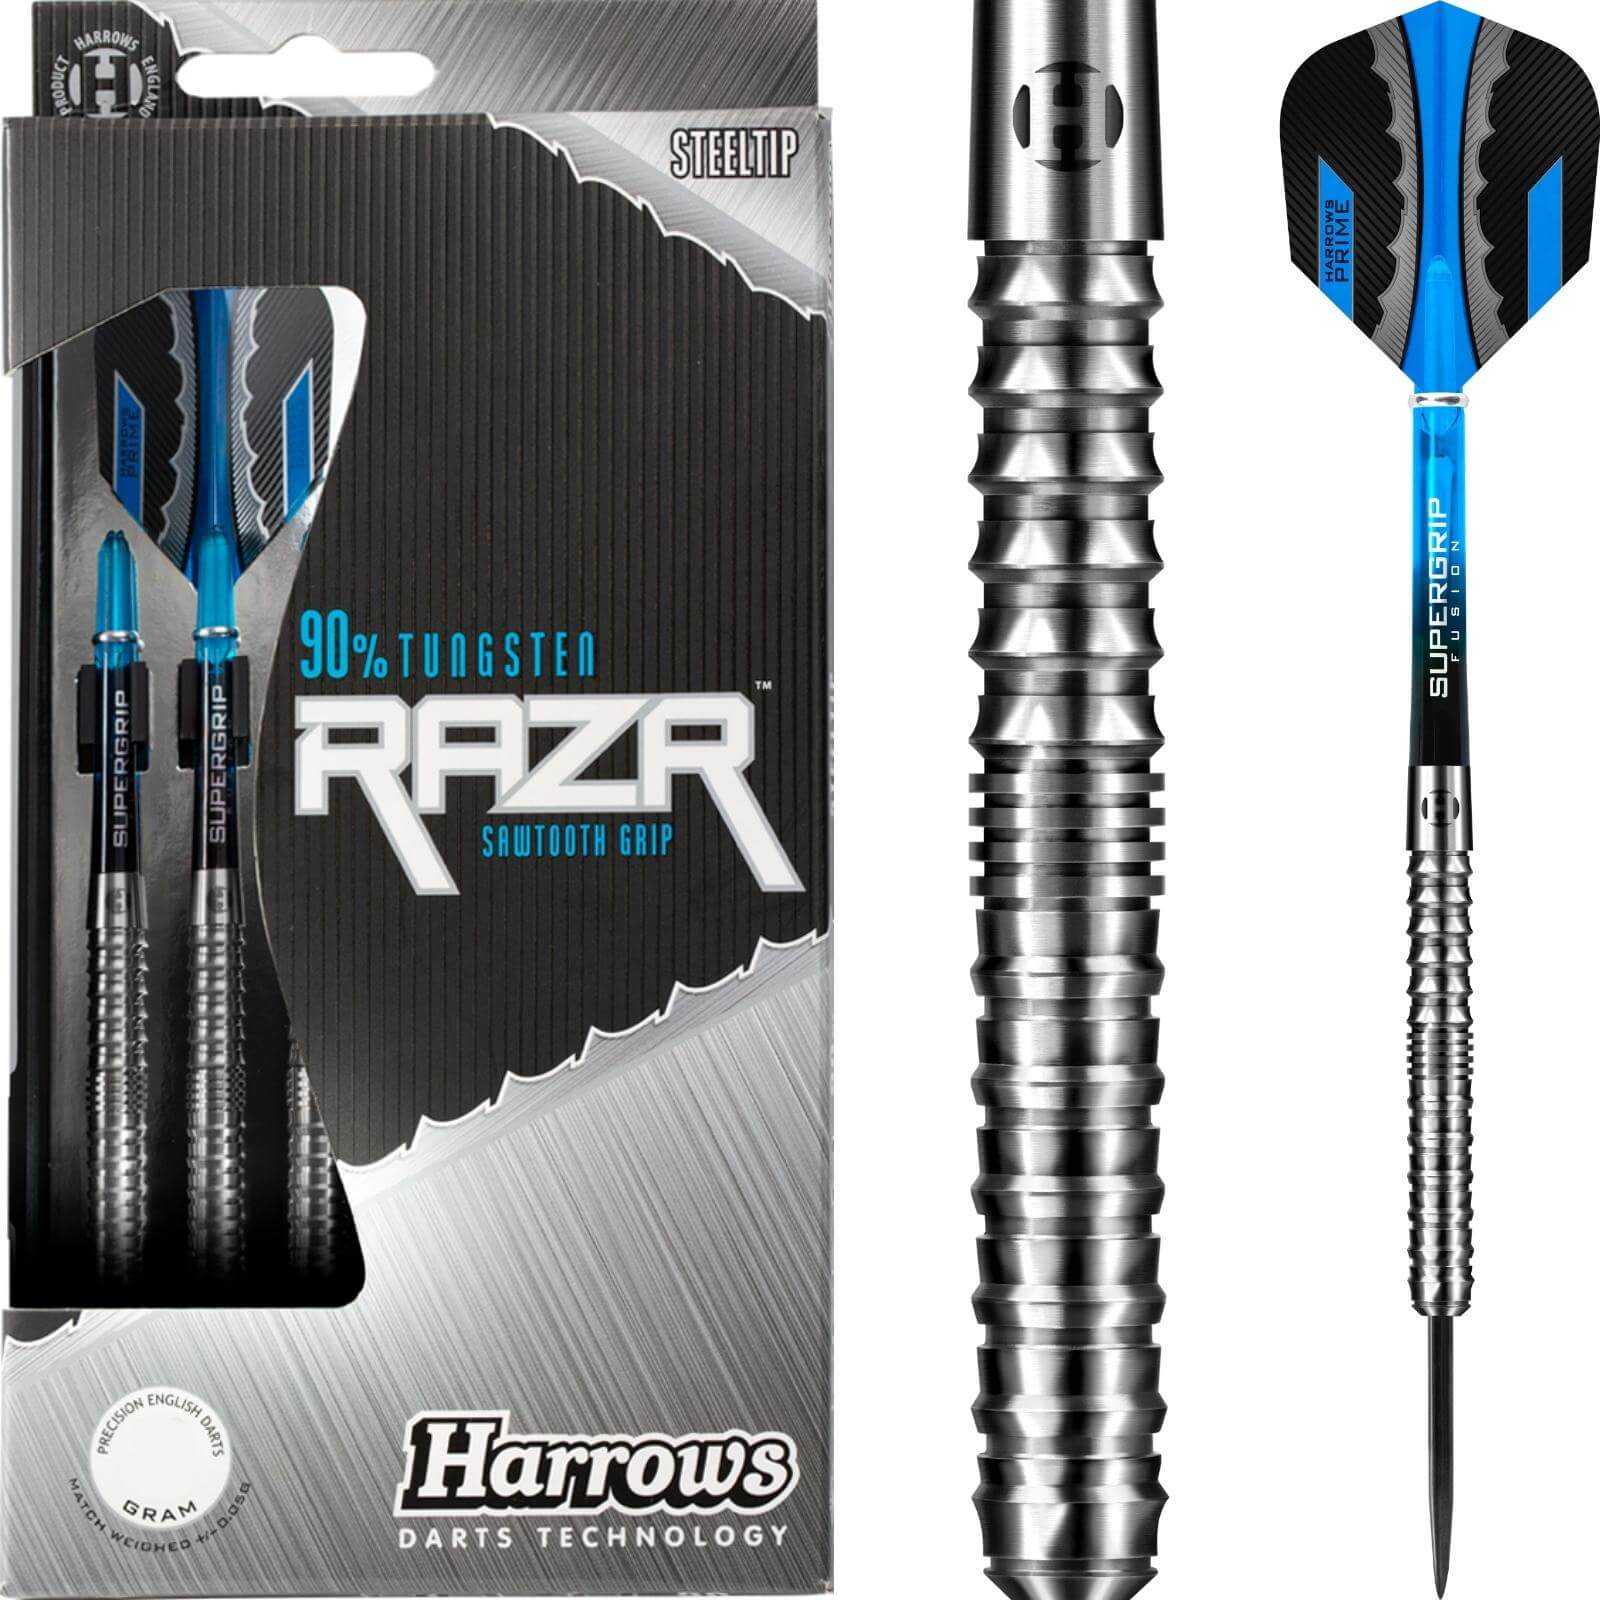 Darts - Harrows - RazR Parallel Darts - Steel Tip - 90% Tungsten - 21g 23g 25g 28g 30g 